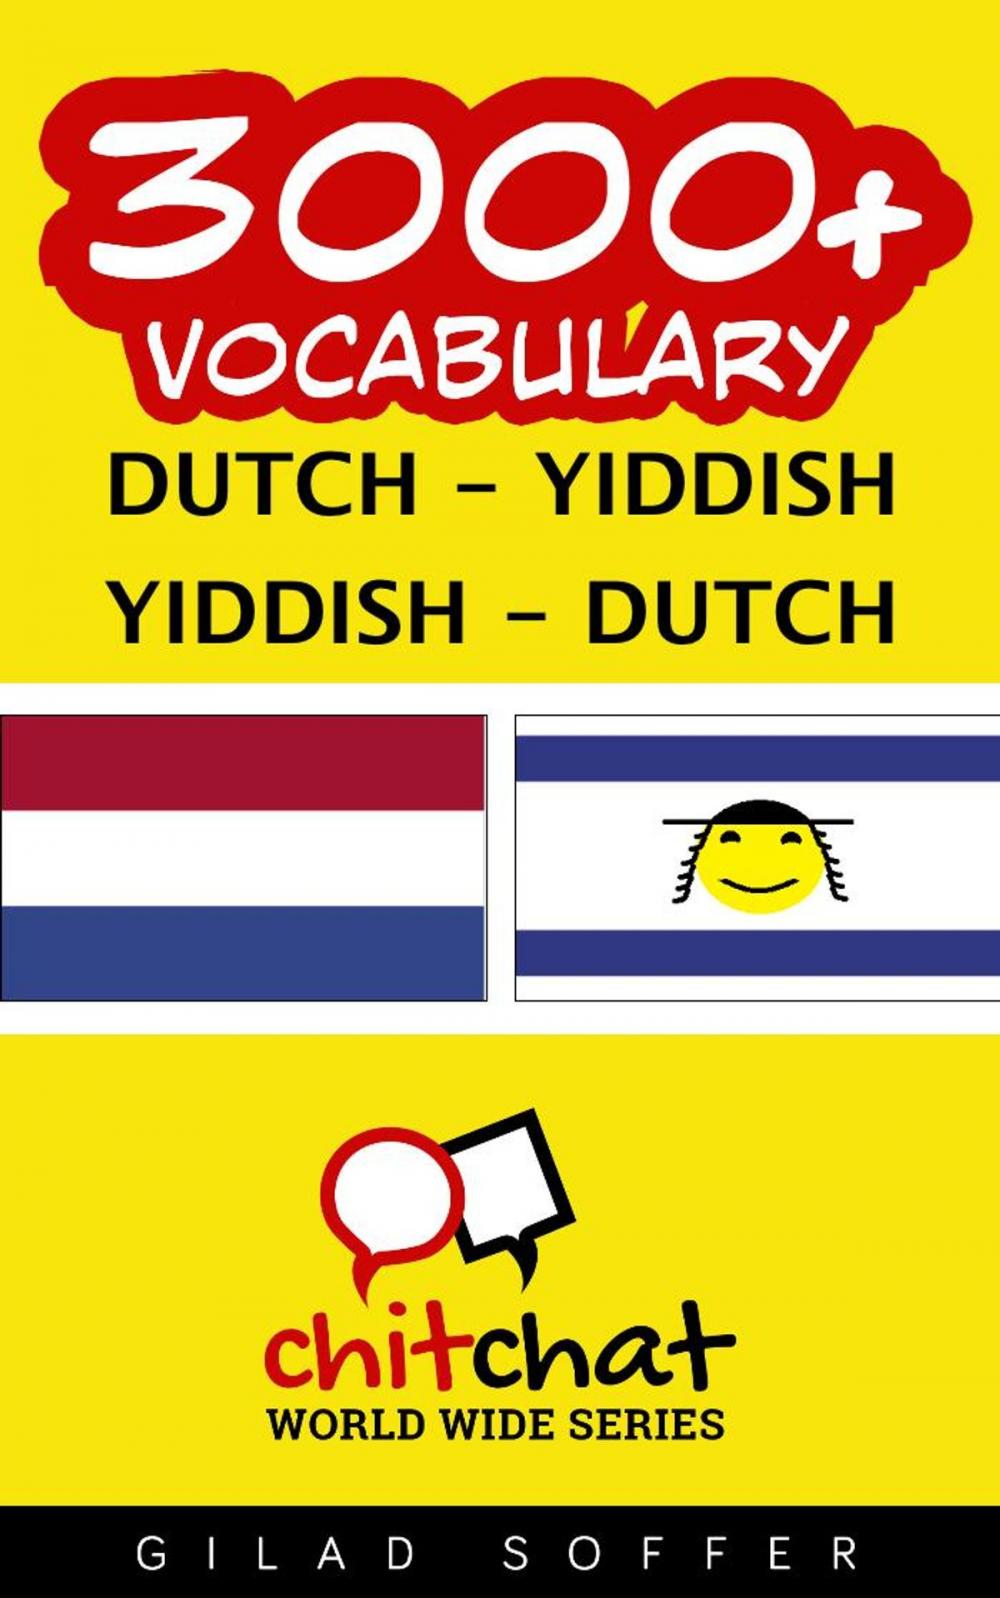 Big bigCover of 3000+ Vocabulary Dutch - Yiddish